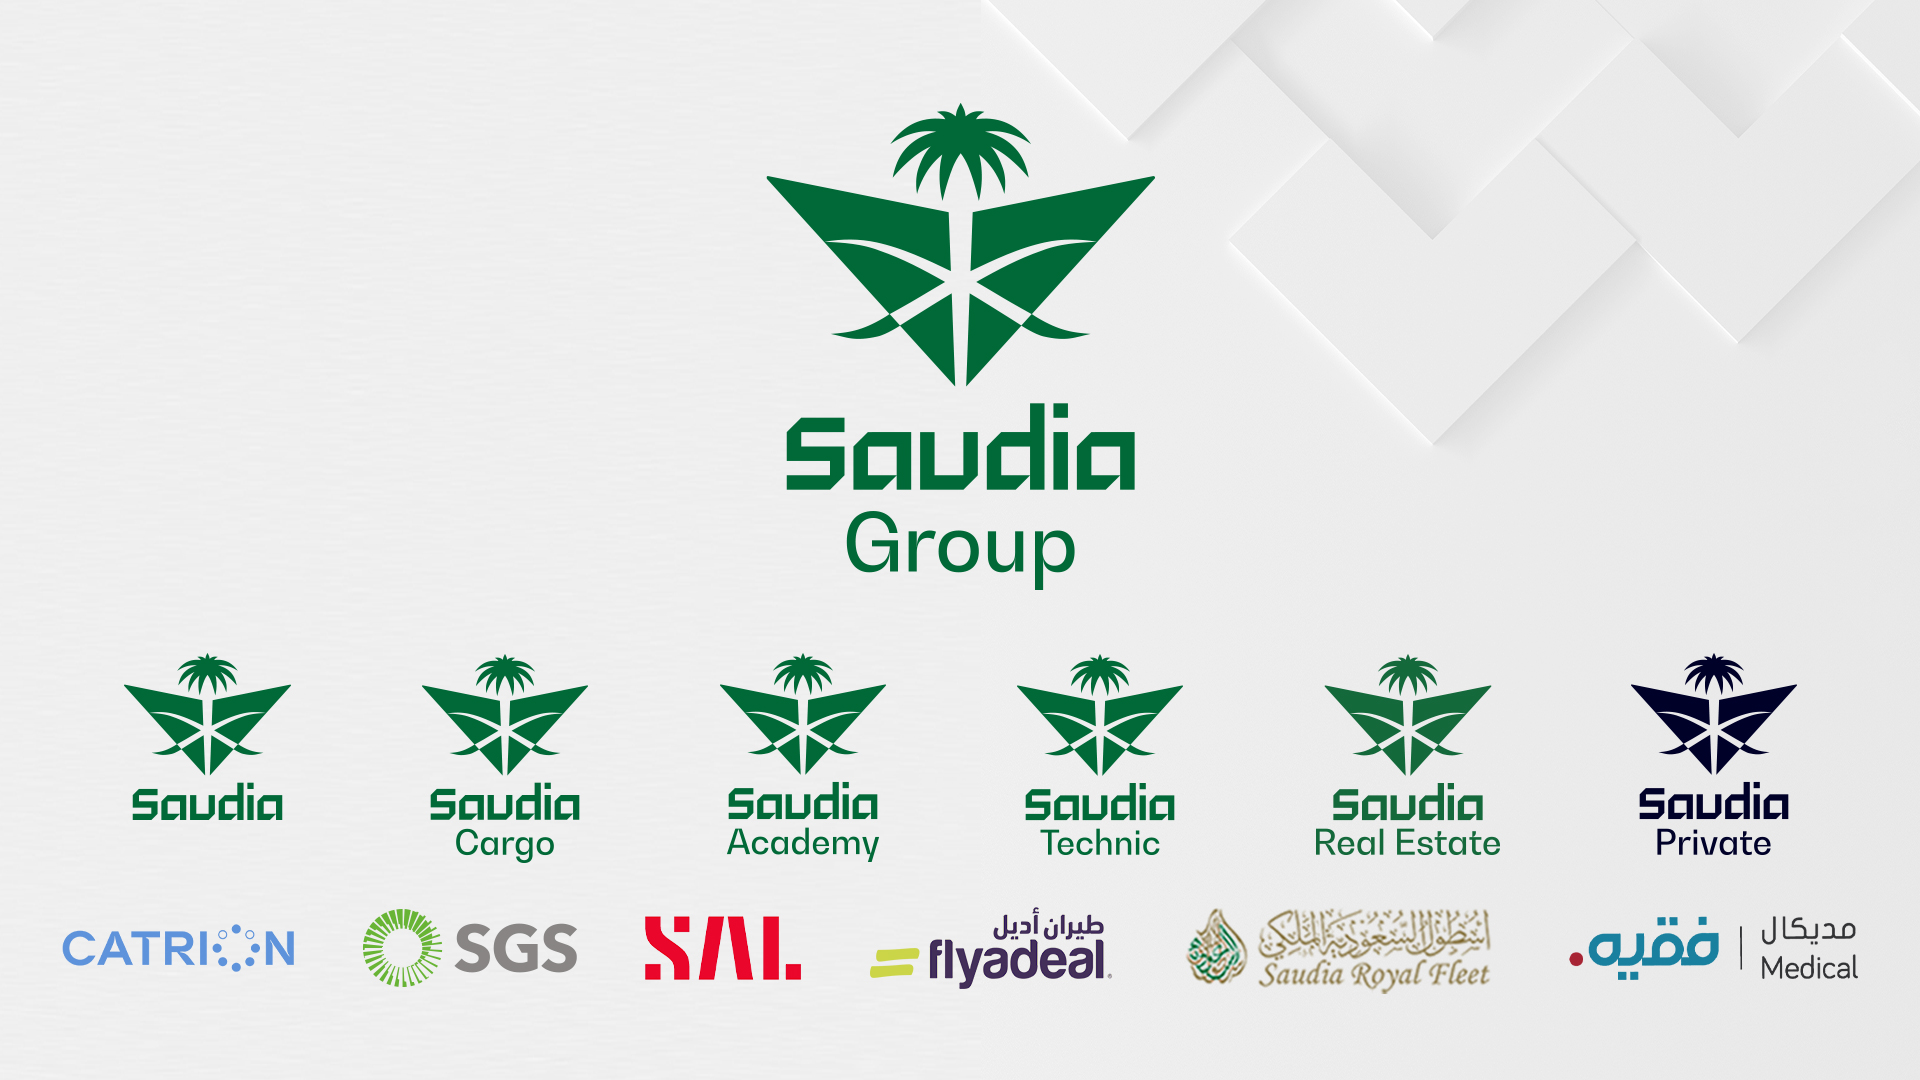 Saudi On Air - Endoscopy On Air